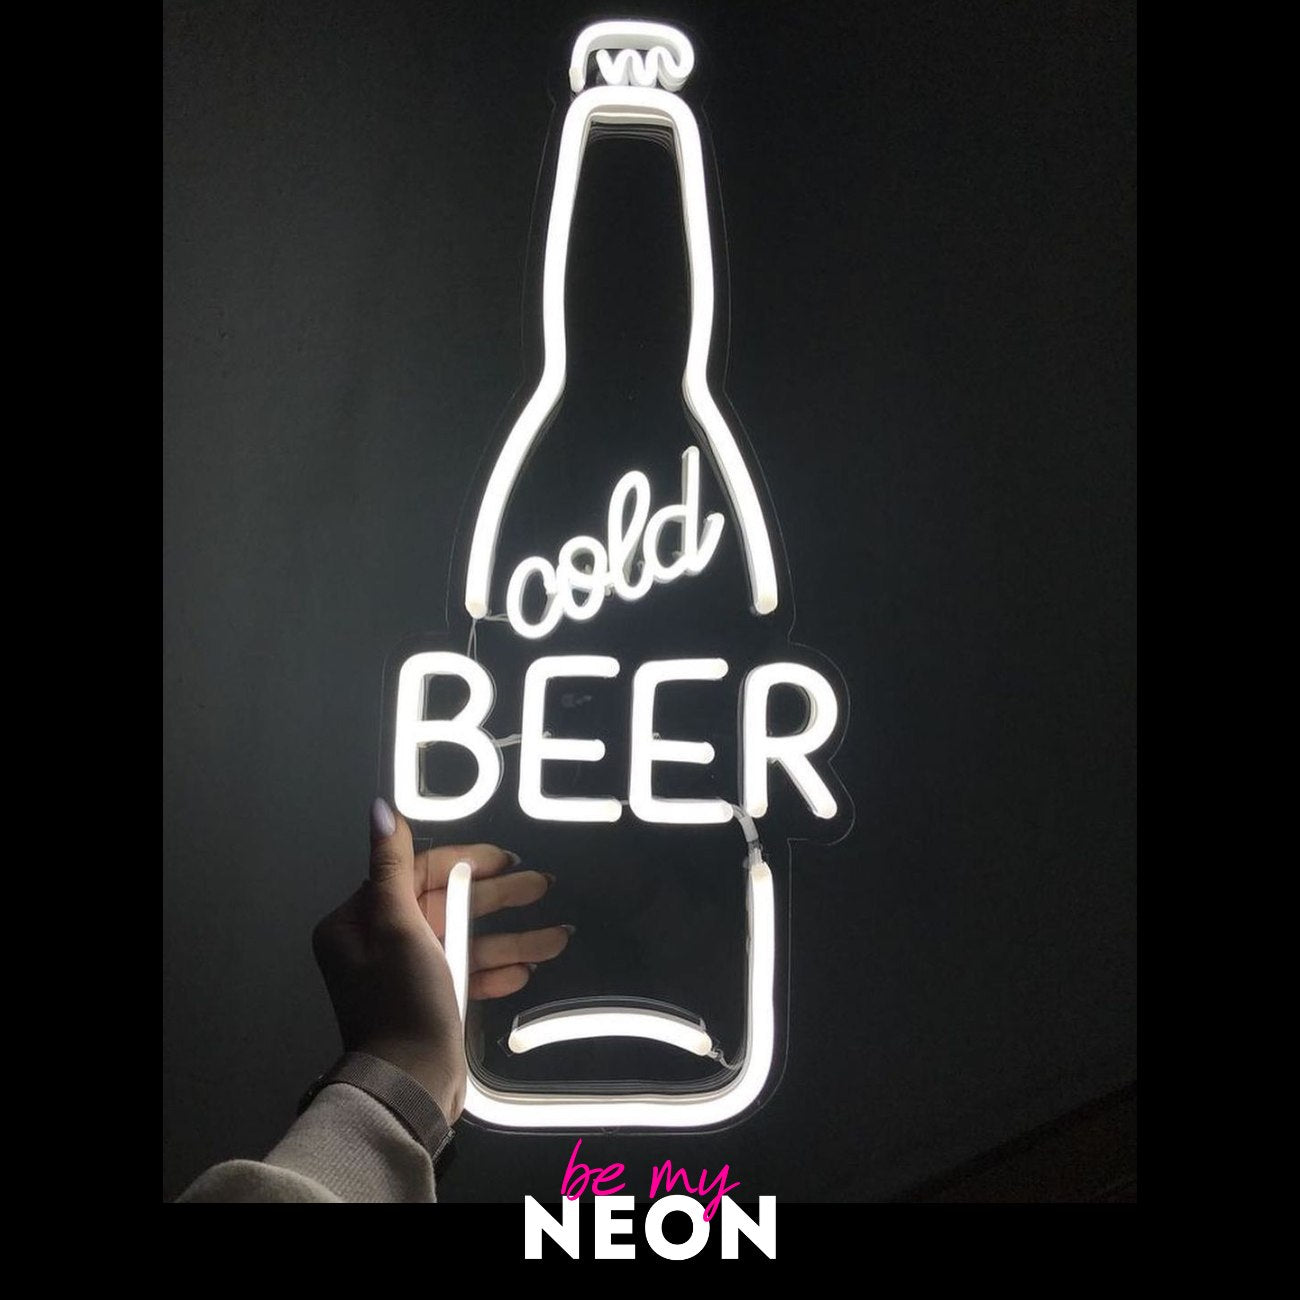 "Cold Beer Kaltes Bier" LED Neonschild